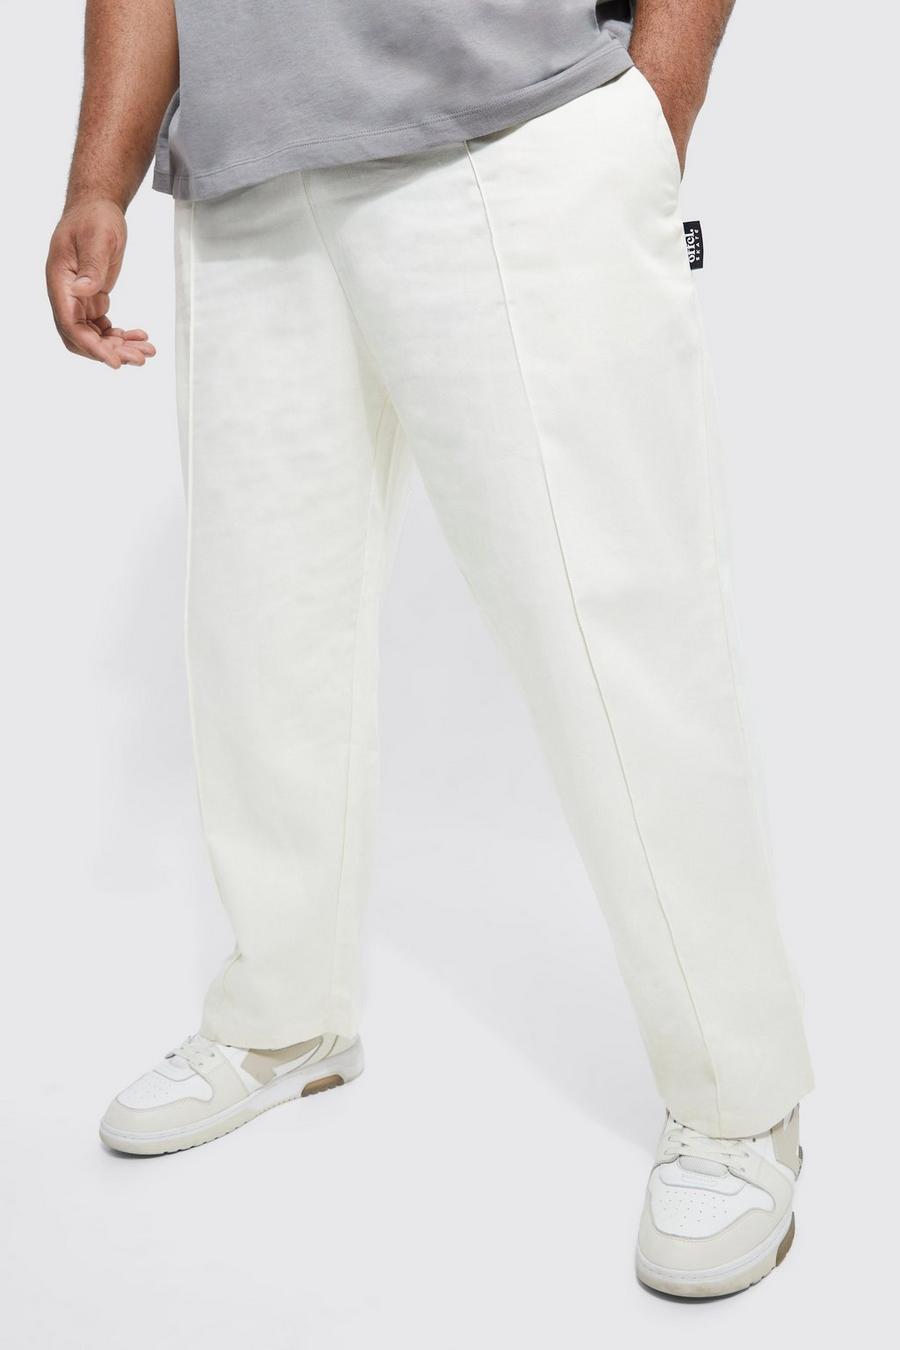 שמנת bianco מכנסי צ'ינו סקייטר קרופ עם רצועת מותניים אלסטית, מידות גדולות